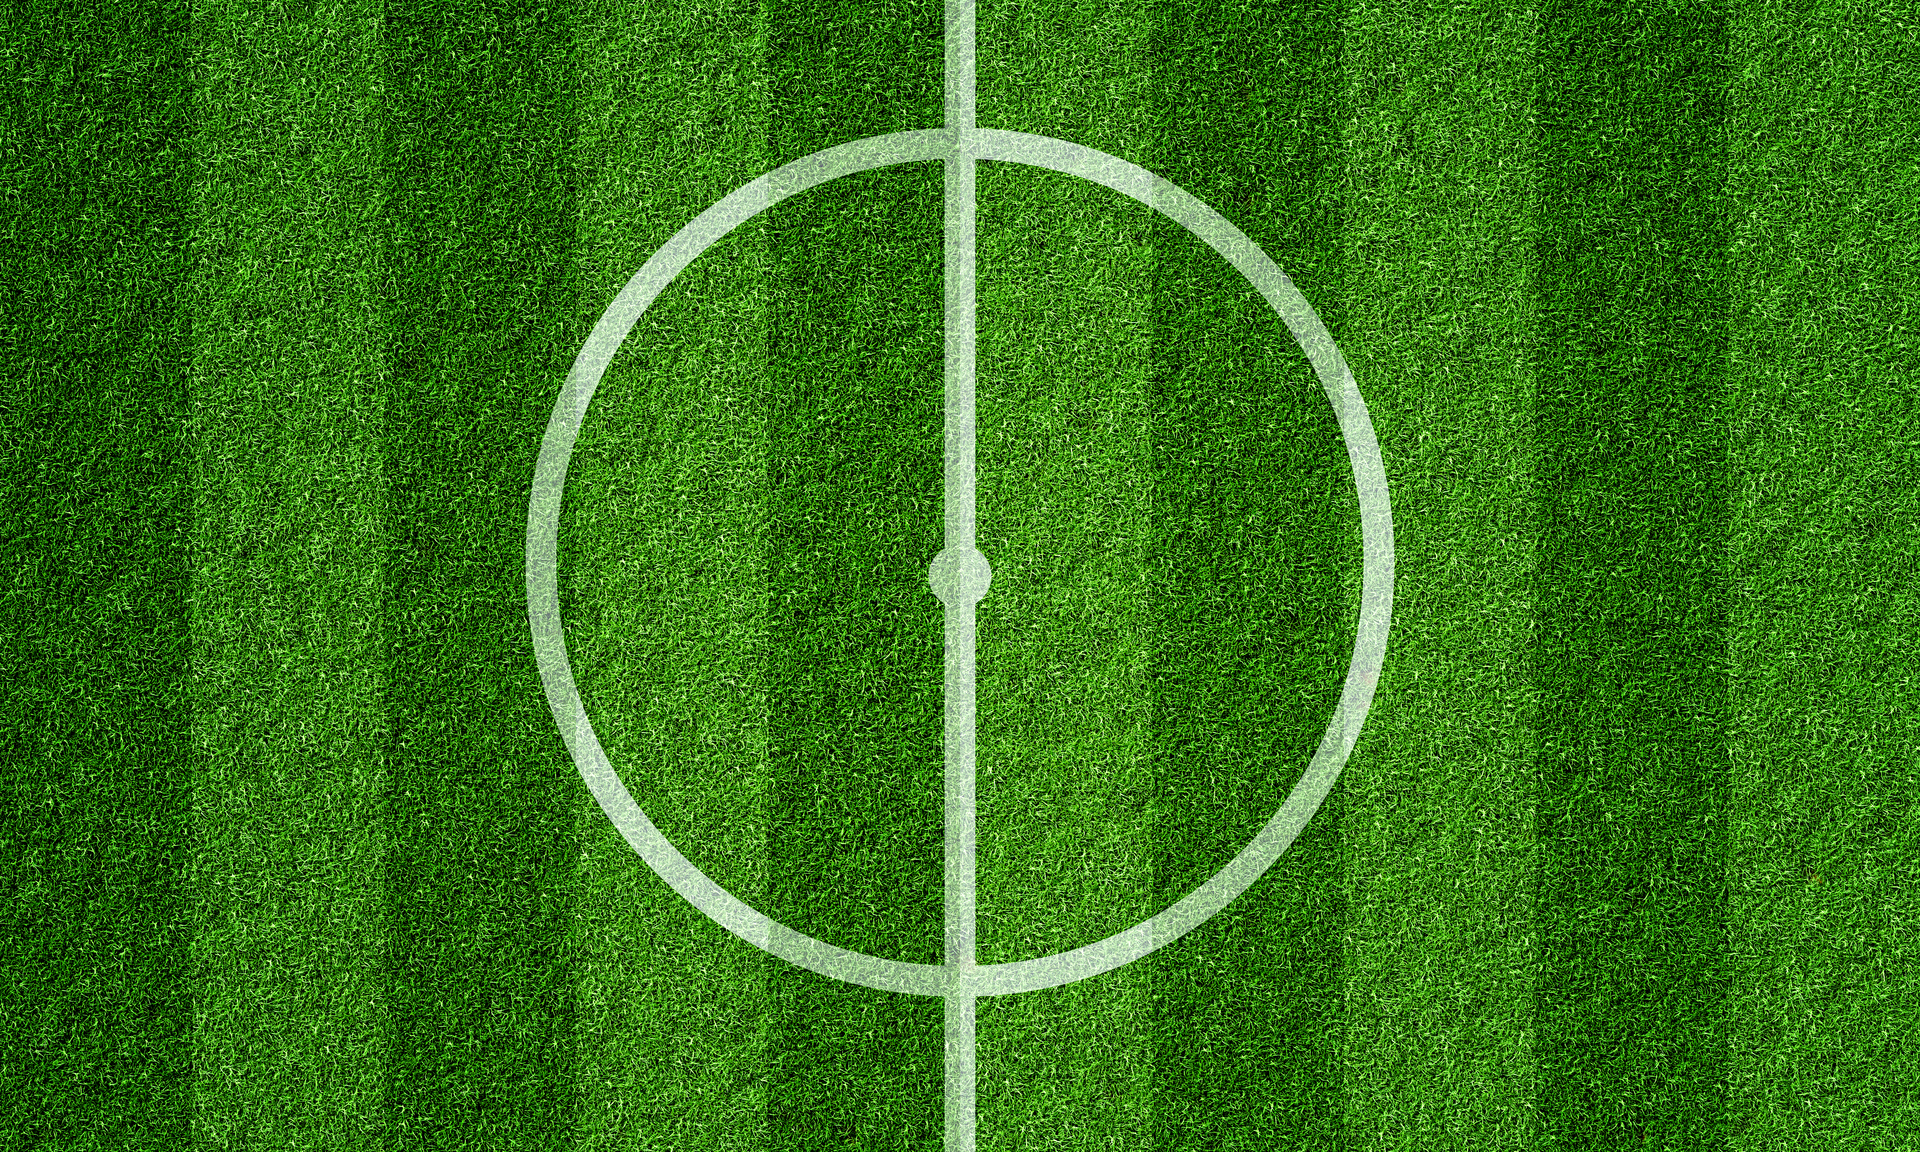 Ten wyrazisty obrazek przedstawia białe koło umieszczone centralnie na boisku piłkarskim. Koło wydaje się być punktem centralnym i wyróżnia się na tle trawy o żywym odcieniu zieleni. Obrazek ukazuje precyzję i symetrię, podkreślając znaczenie tego elementu na boisku oraz sugerując, że jest to część istotnej struktury gry w piłkę nożną